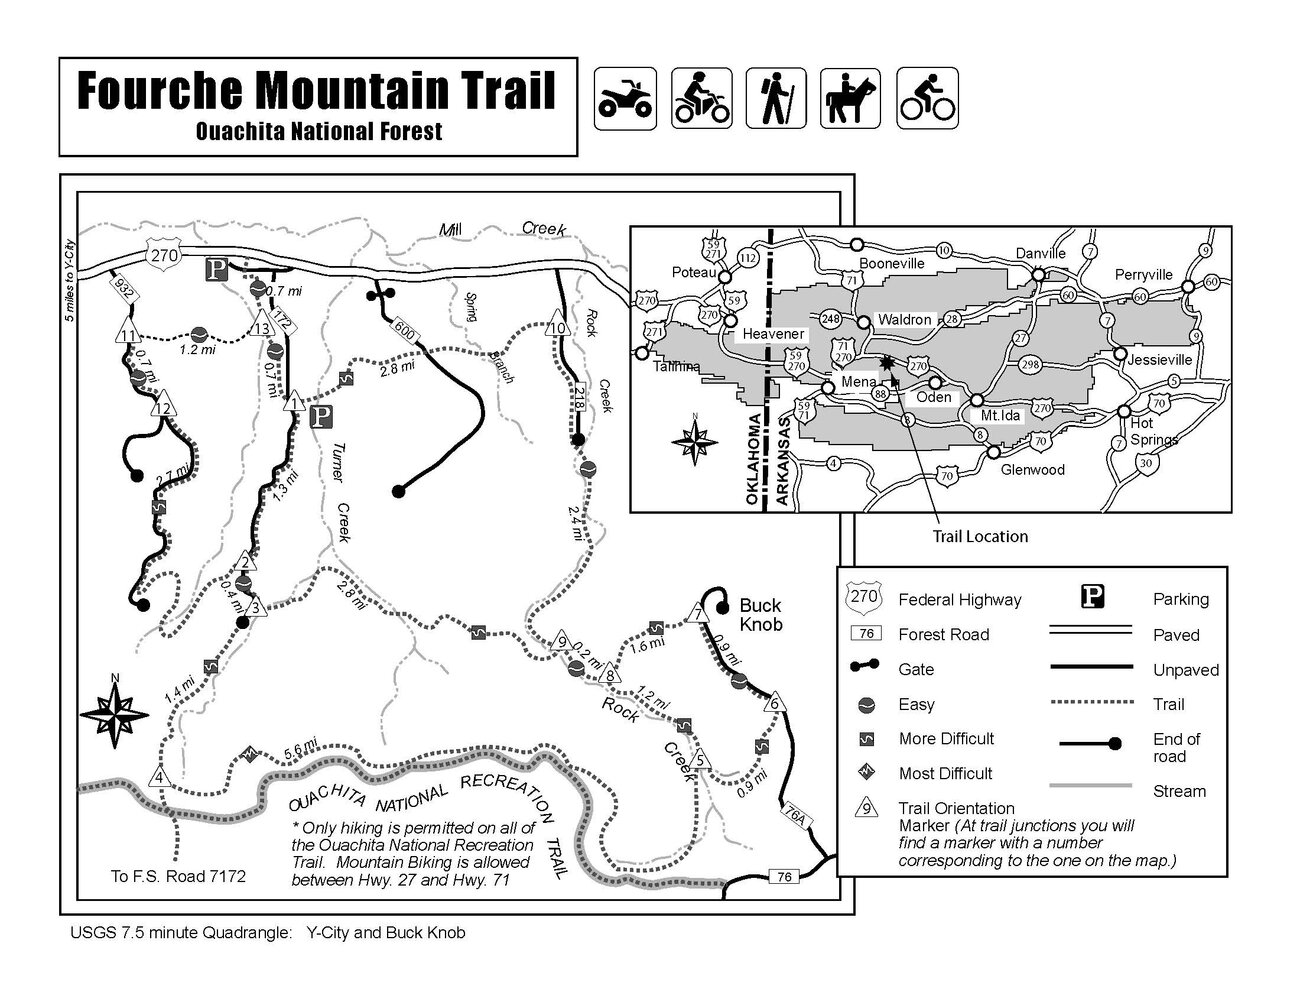 Fourche Mountain trails